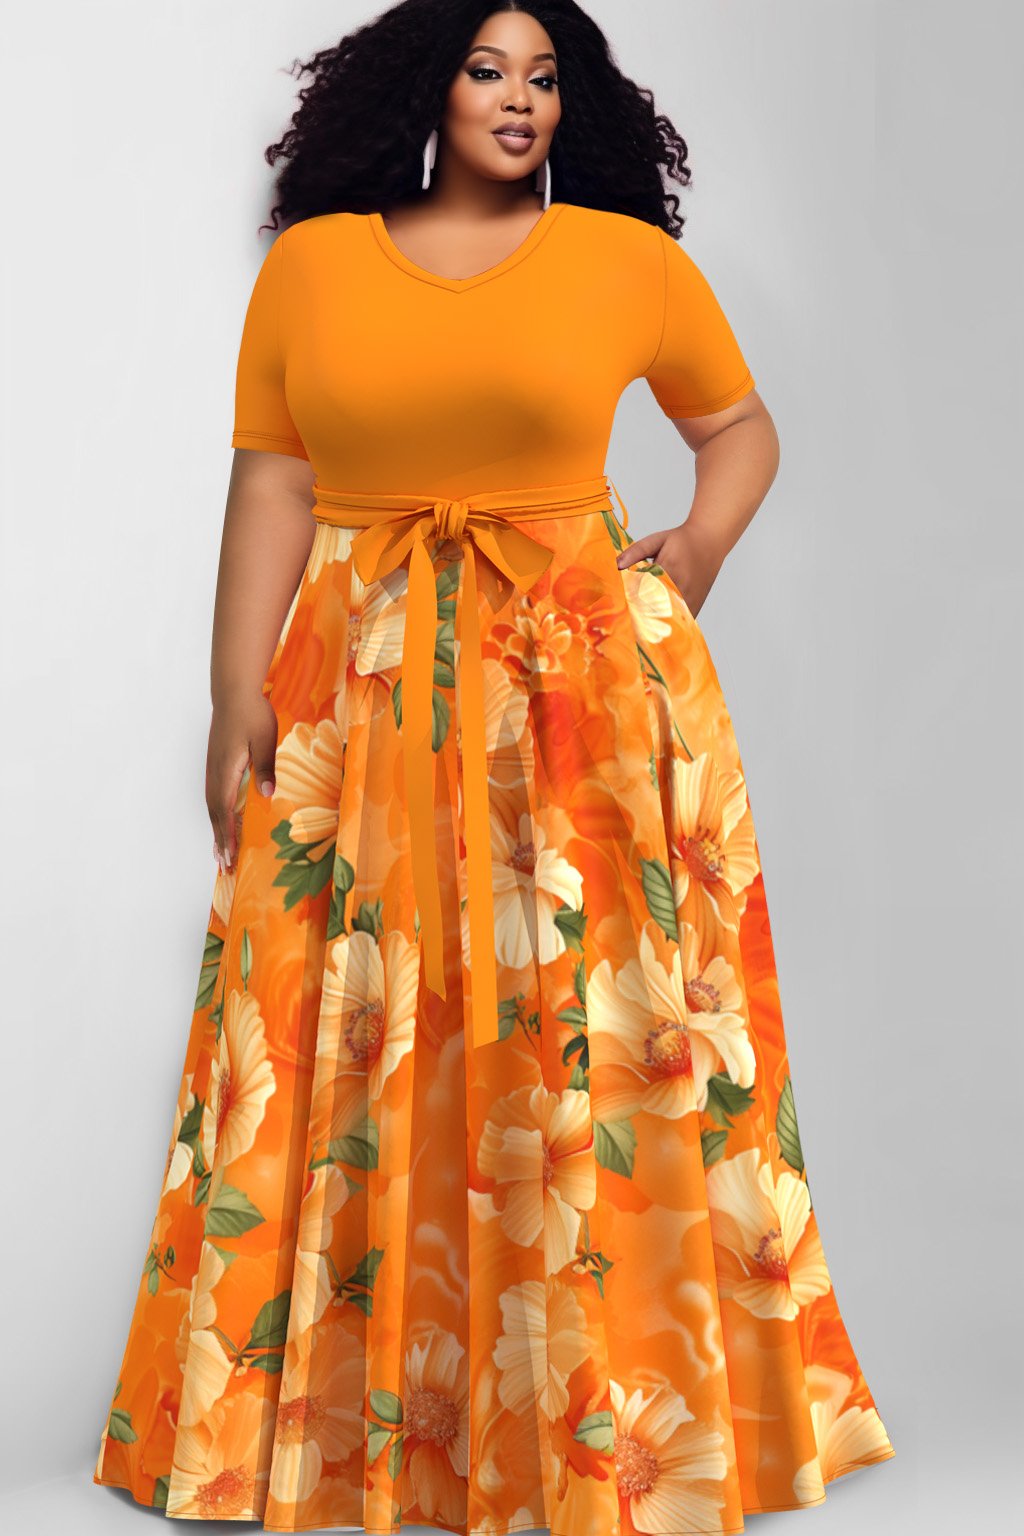 Xpluswear Design Plus Size Casual Orange Floral Print V Neck Lace Up Pockets Maxi Dresses